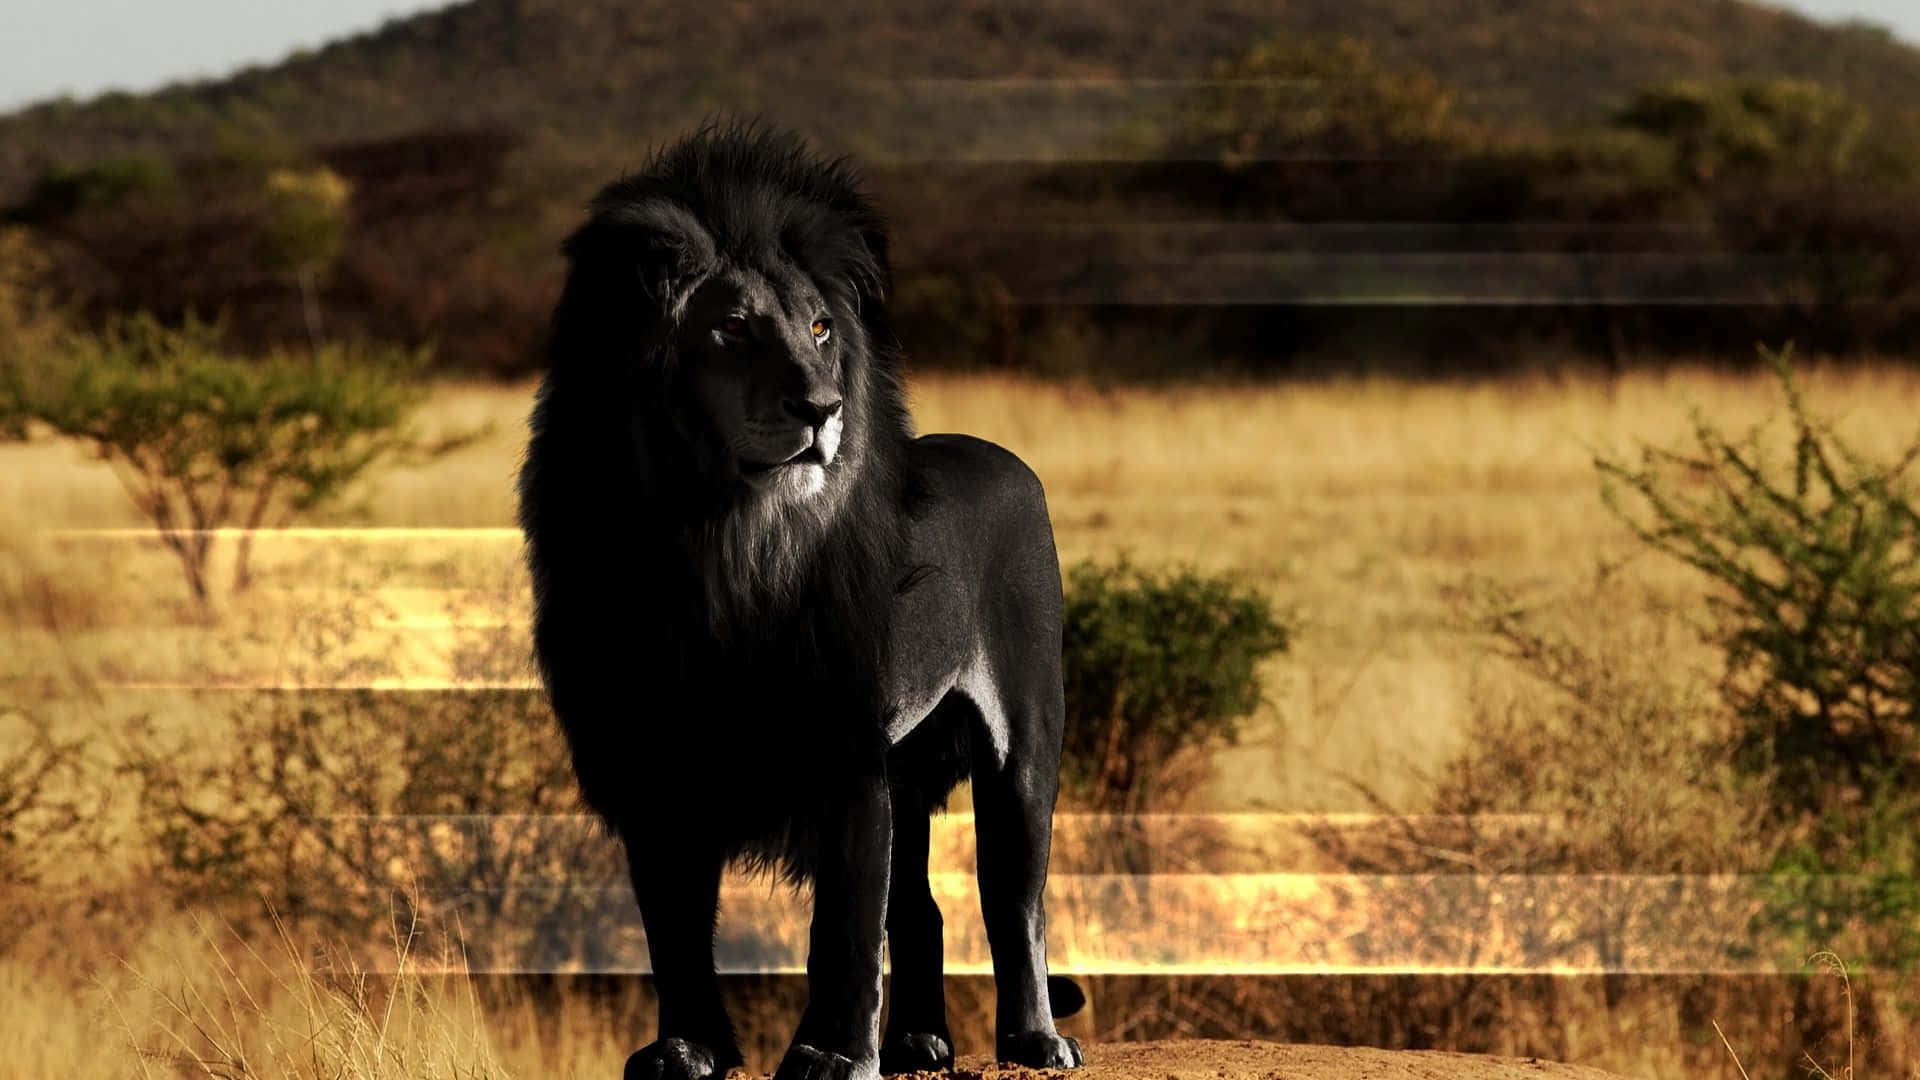 The Majesty Of A Black Lion